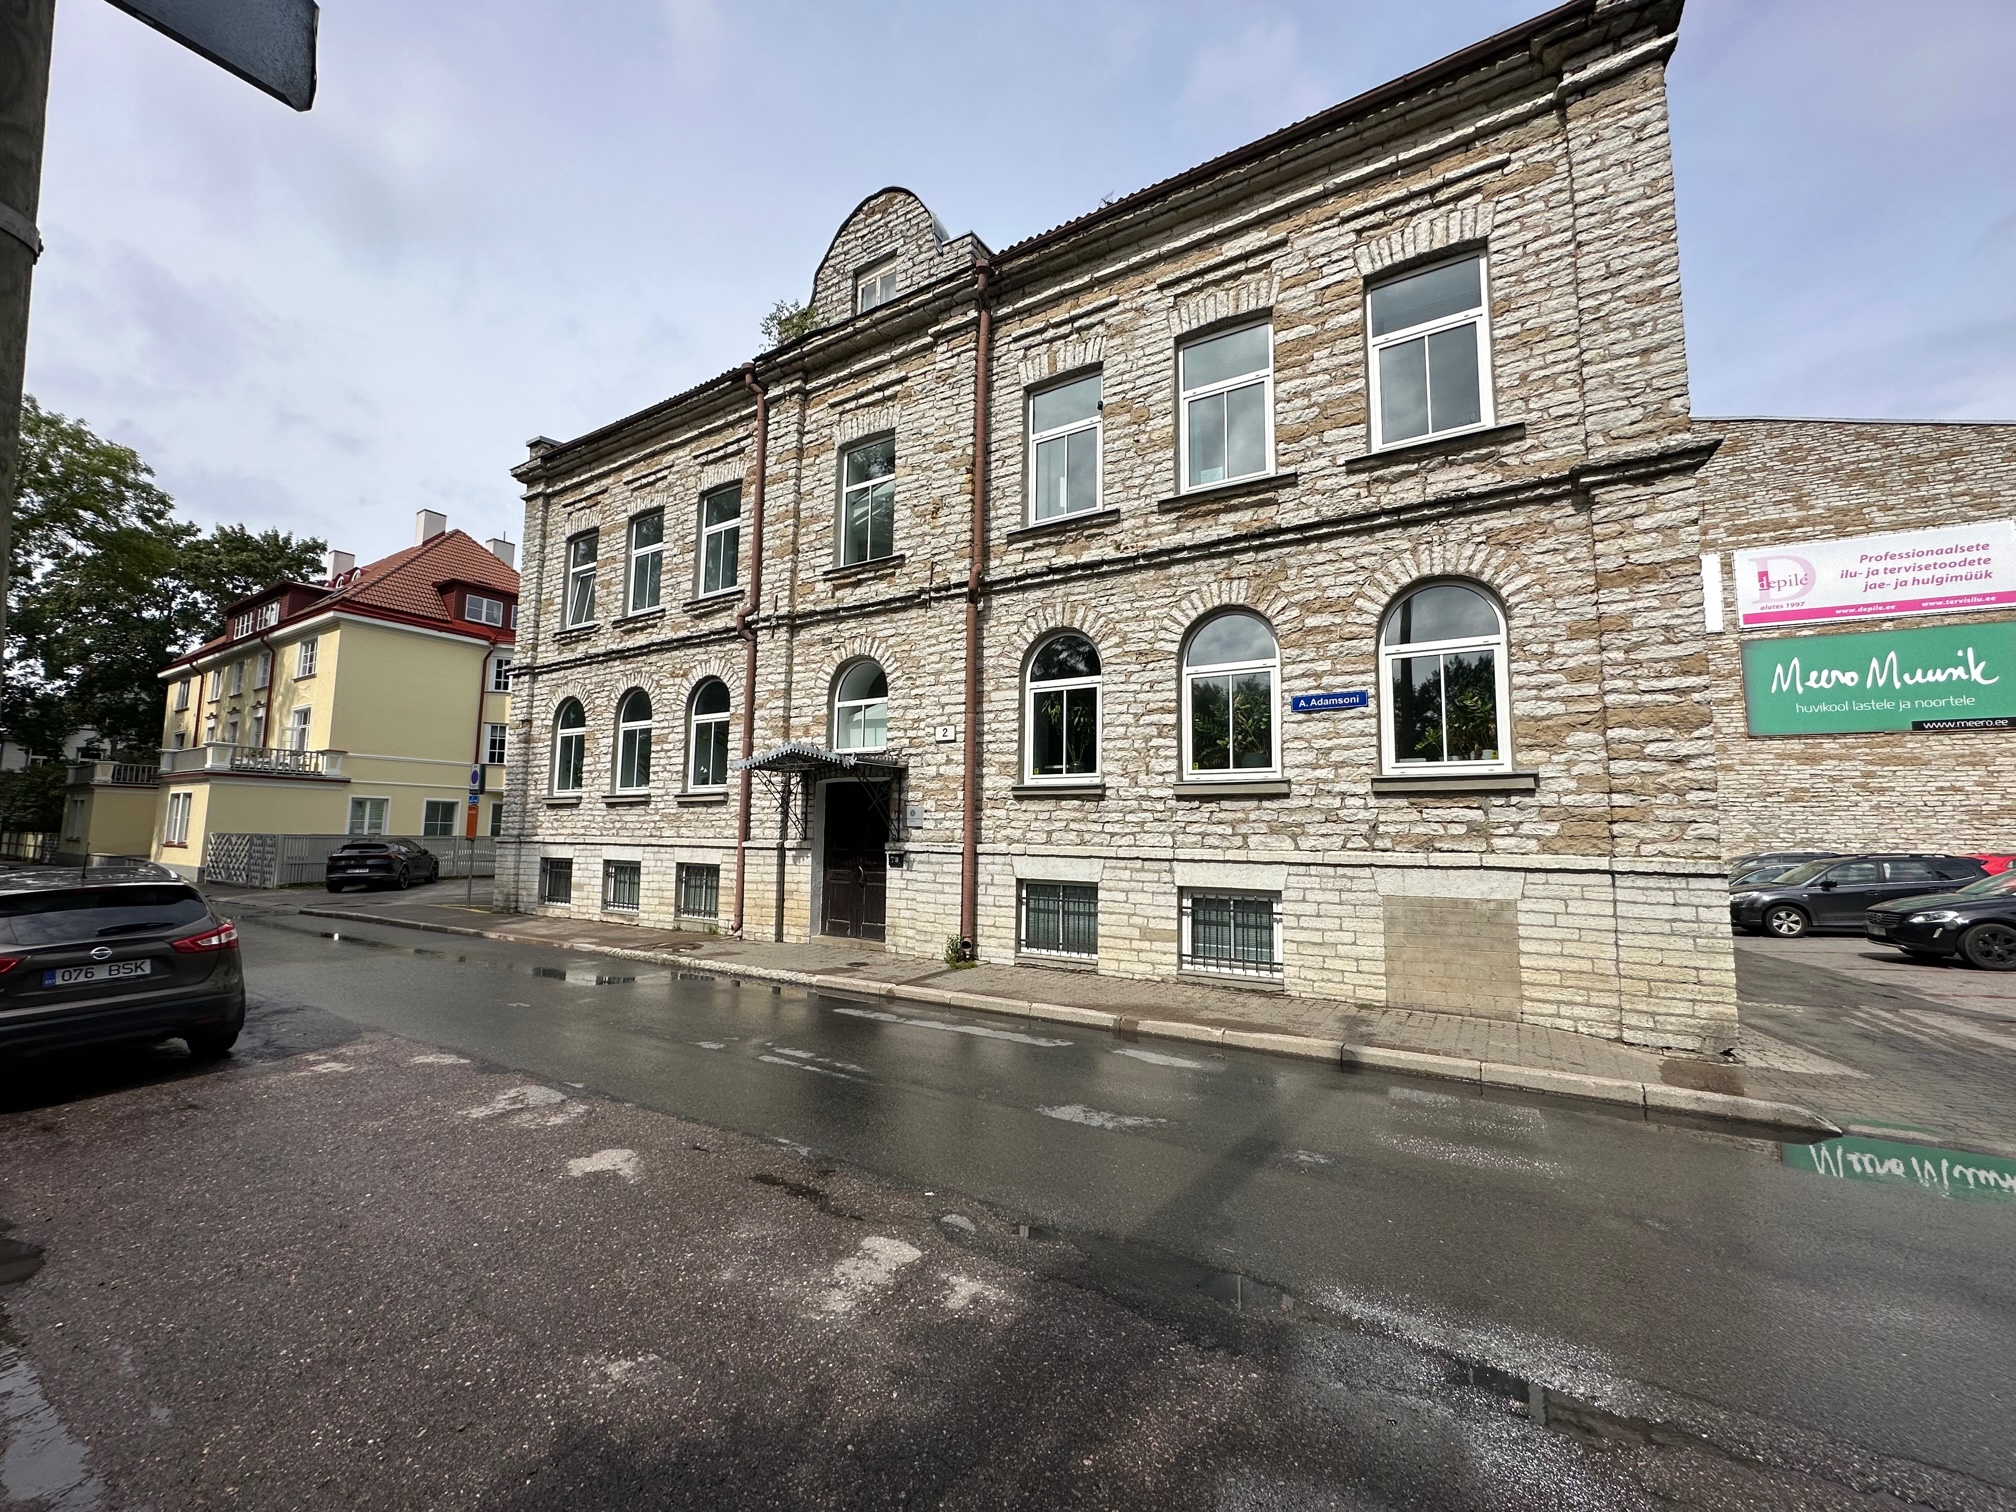 K Security uus kontor Tallinna kesklinnas